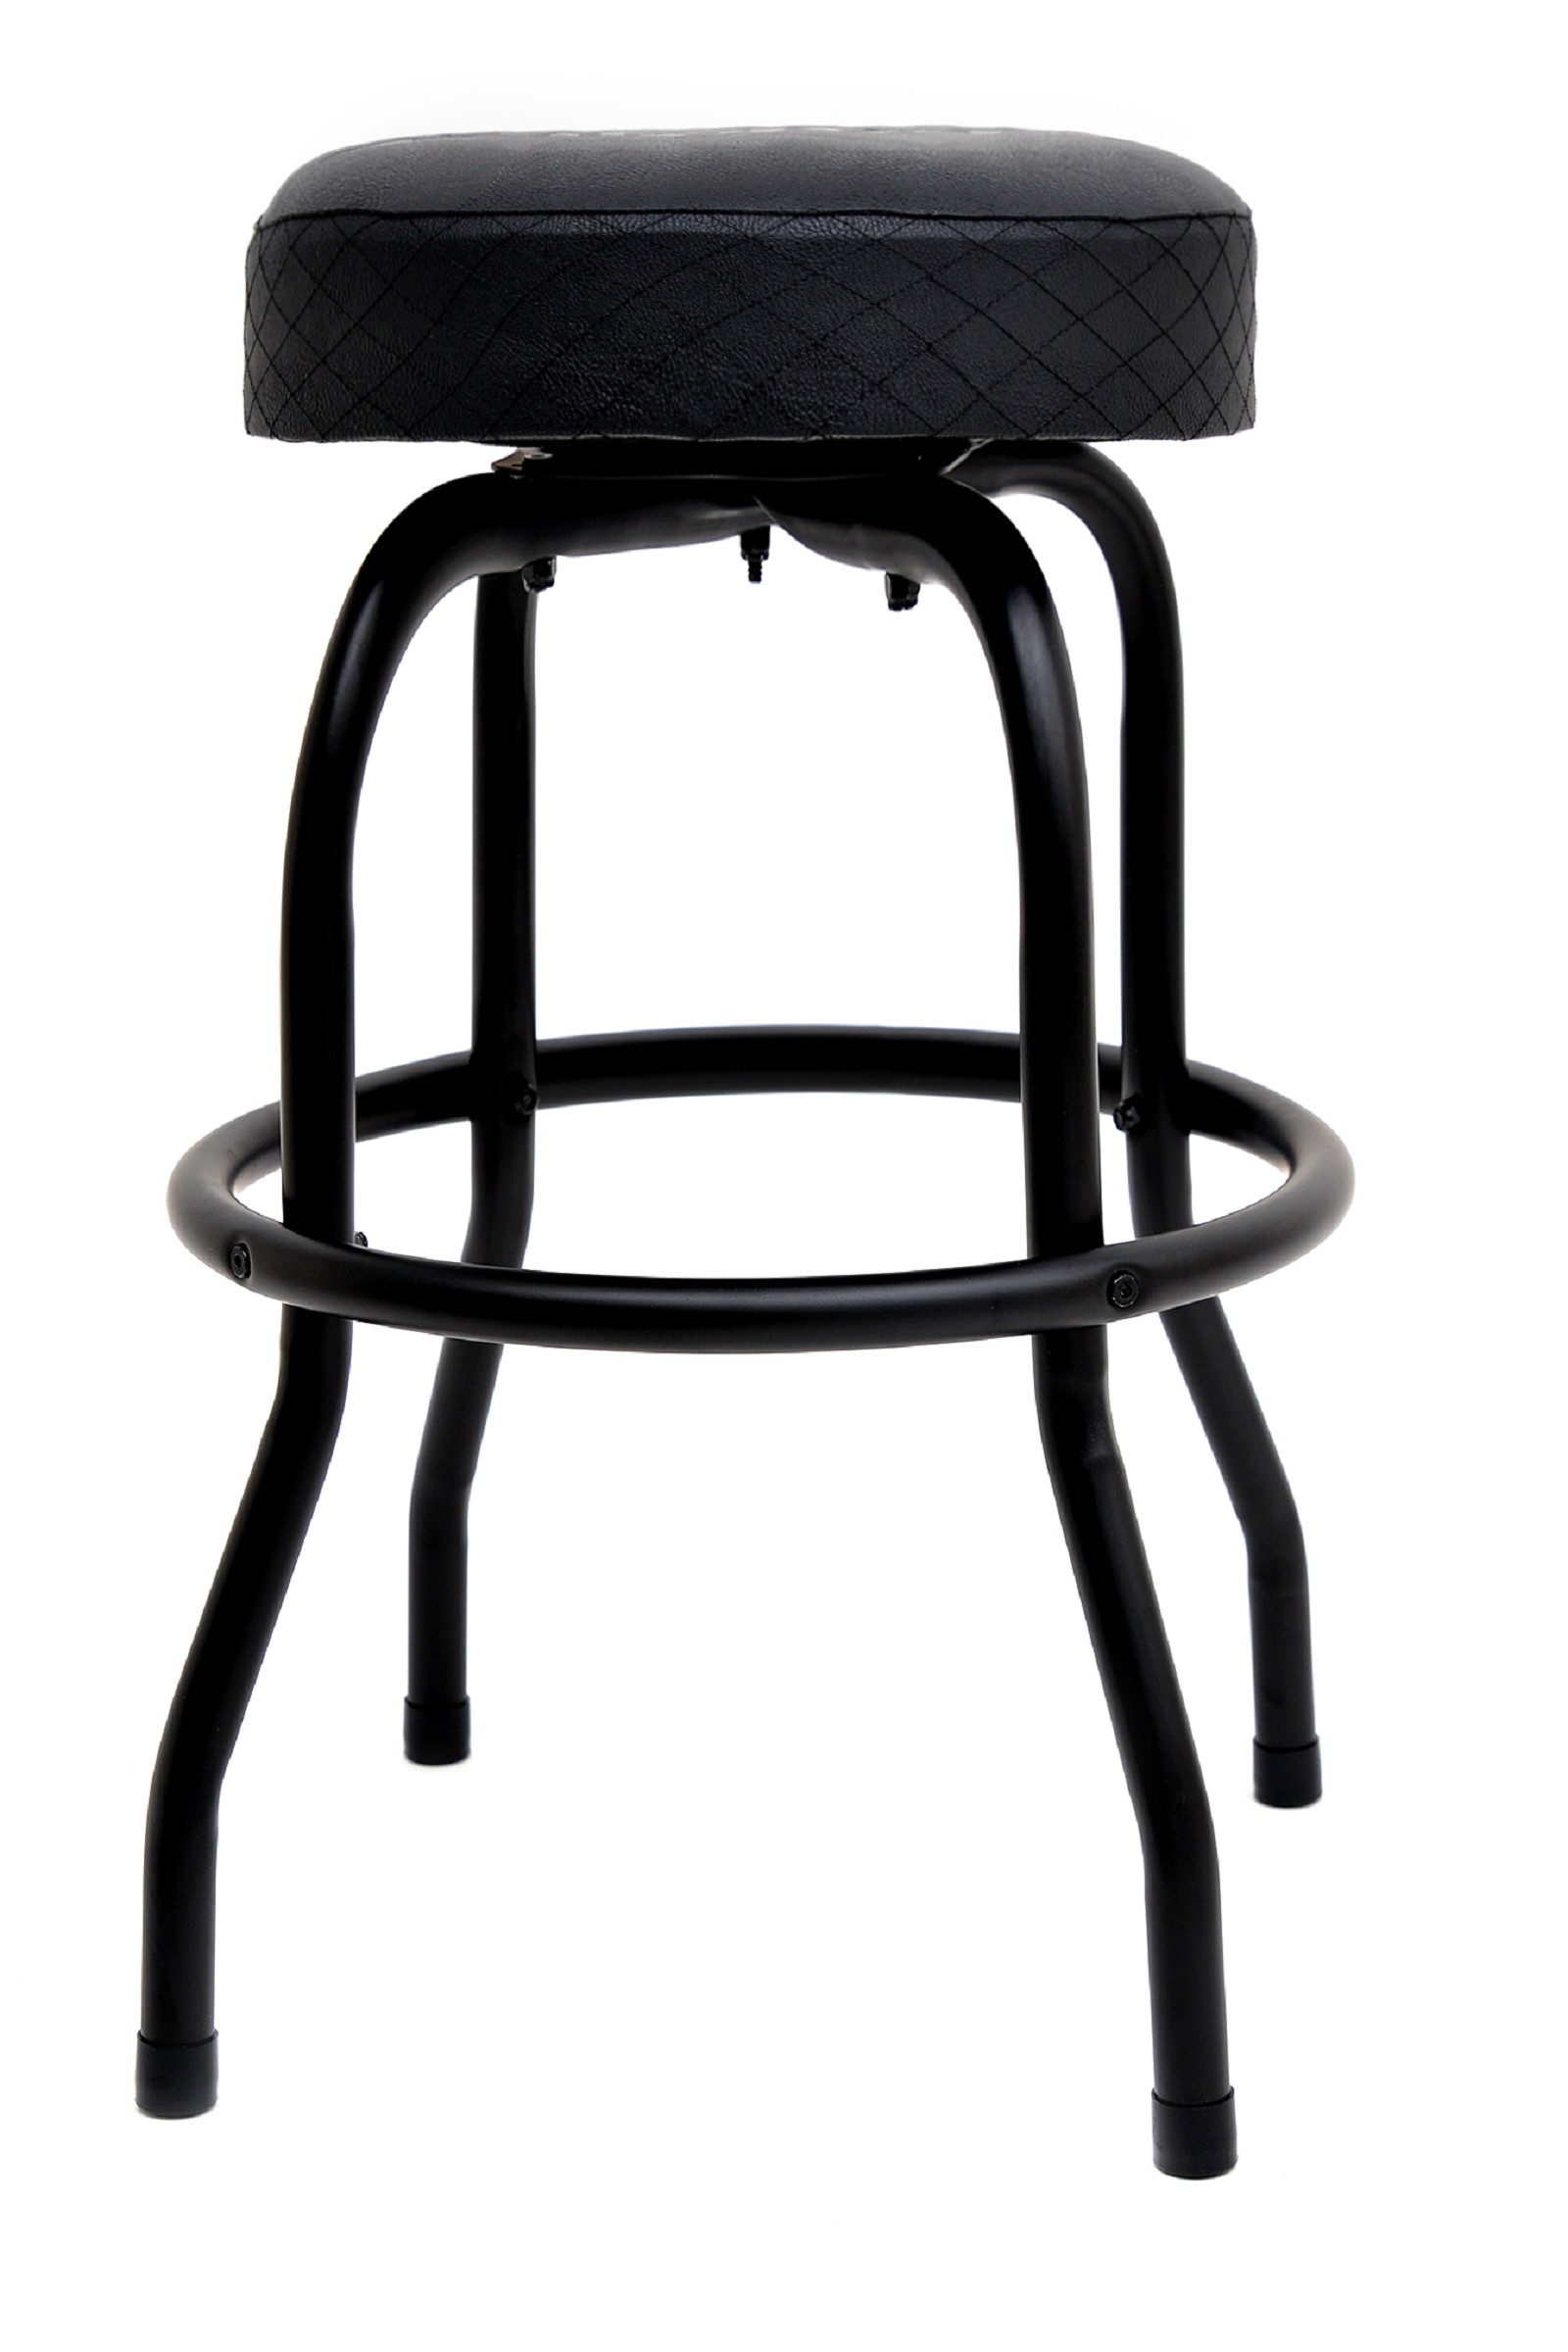 Zildjian Barstool 30" Barhocker schwarz mit grauem Logo